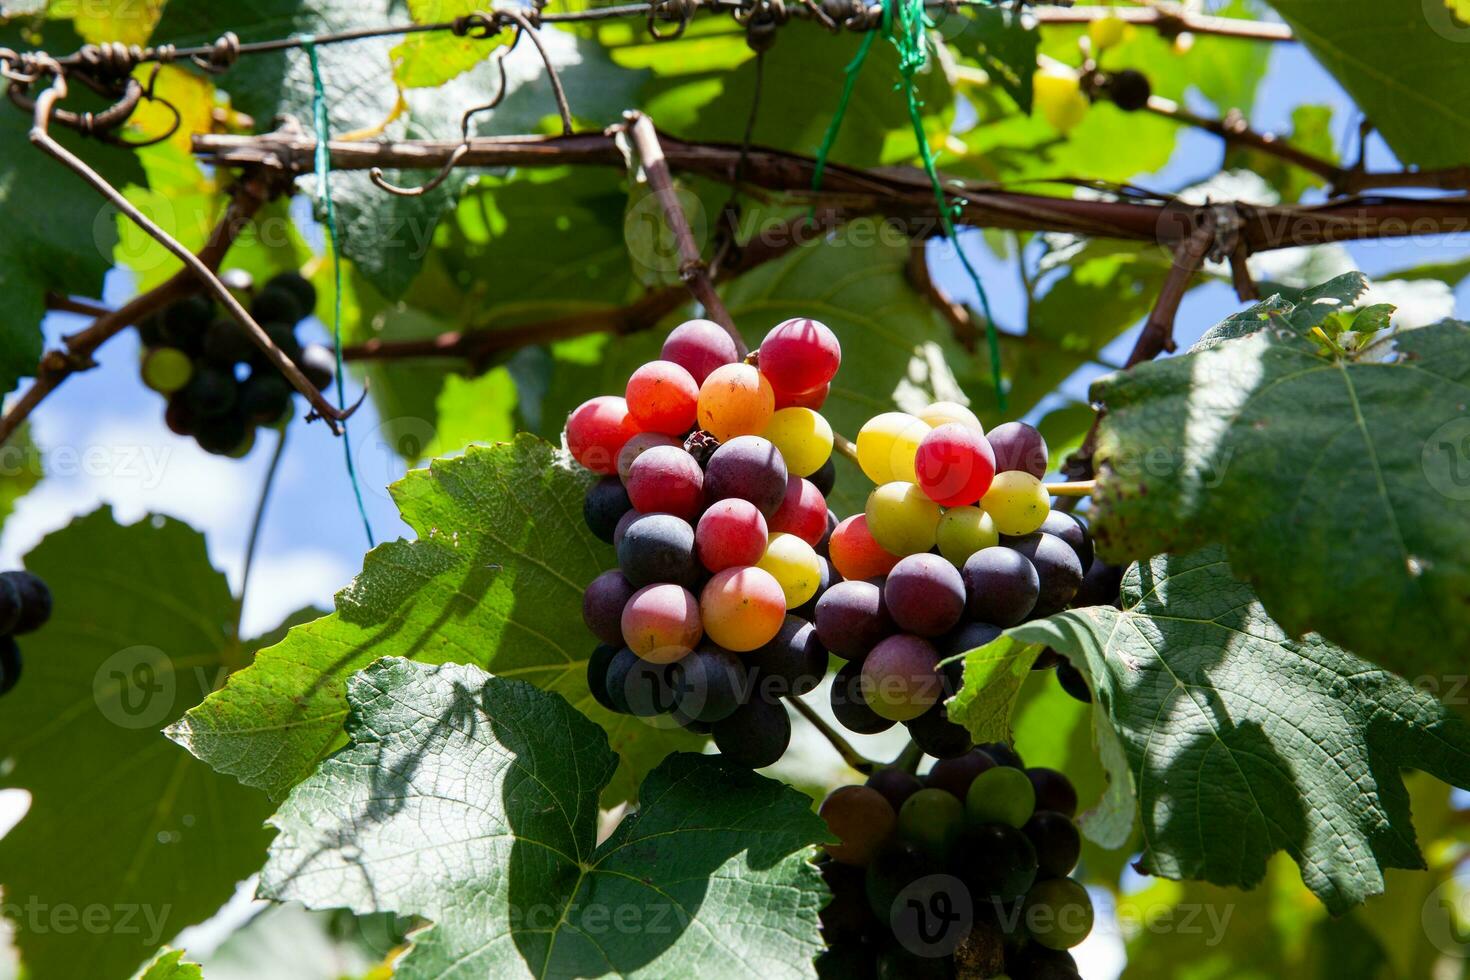 trossen van vitis labrusca druiven in de werkwijze van rijpen in een druif teelt Bij la unie in de valle del cauca regio van Colombia foto